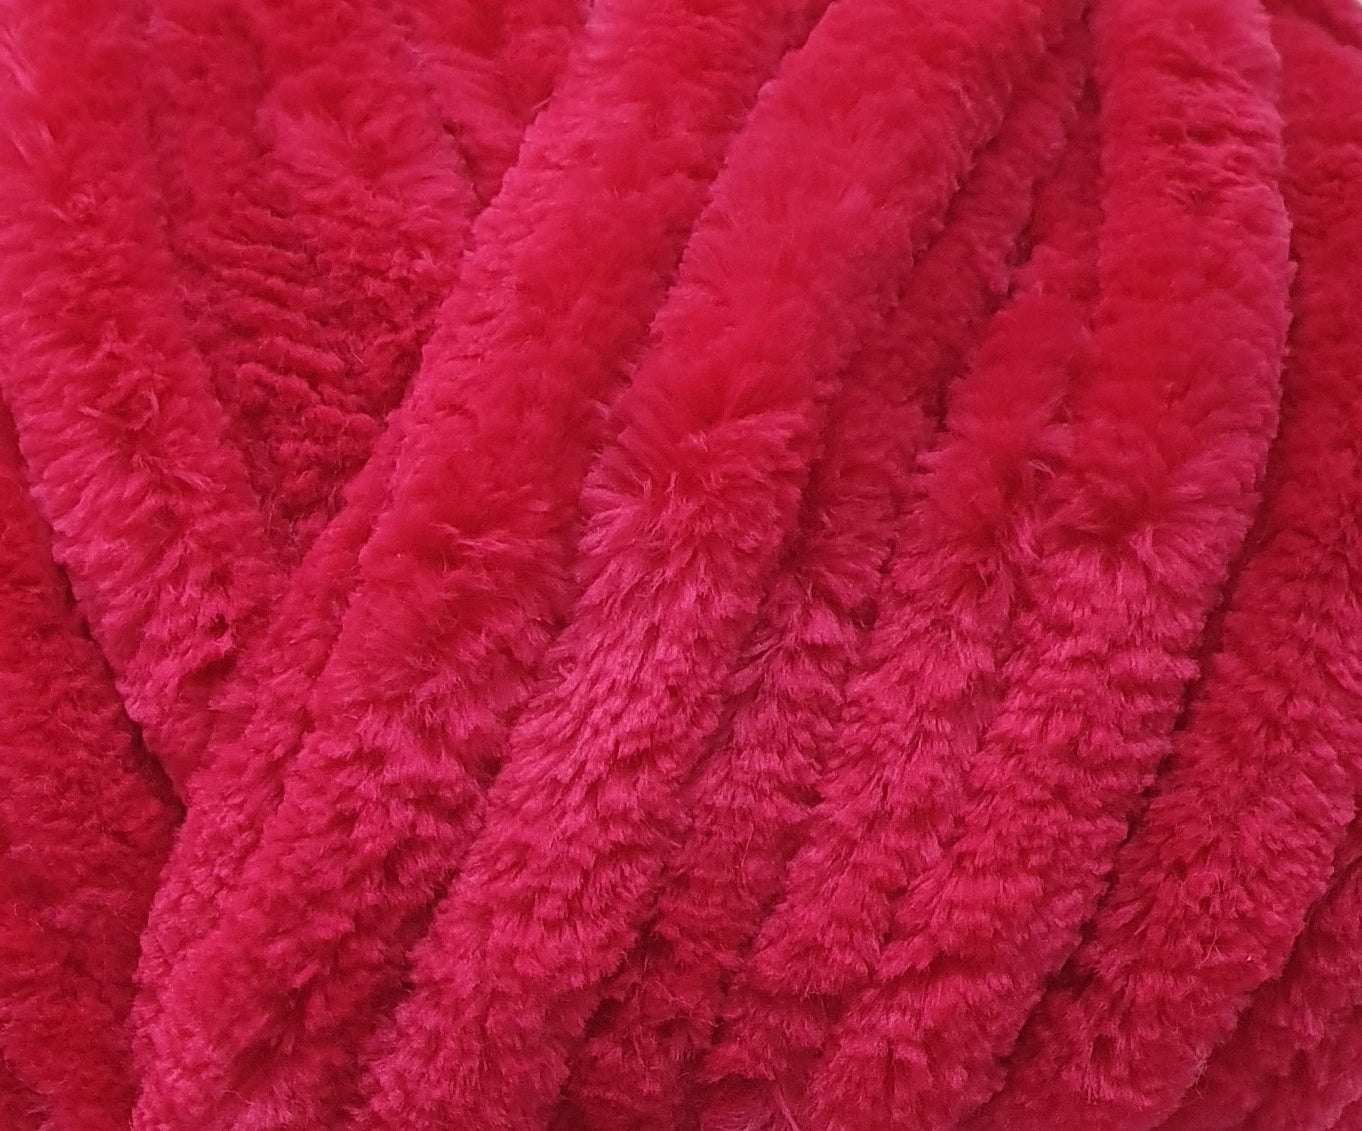 Cherry Pink - Scrumpalicious - Cygnet Yarn